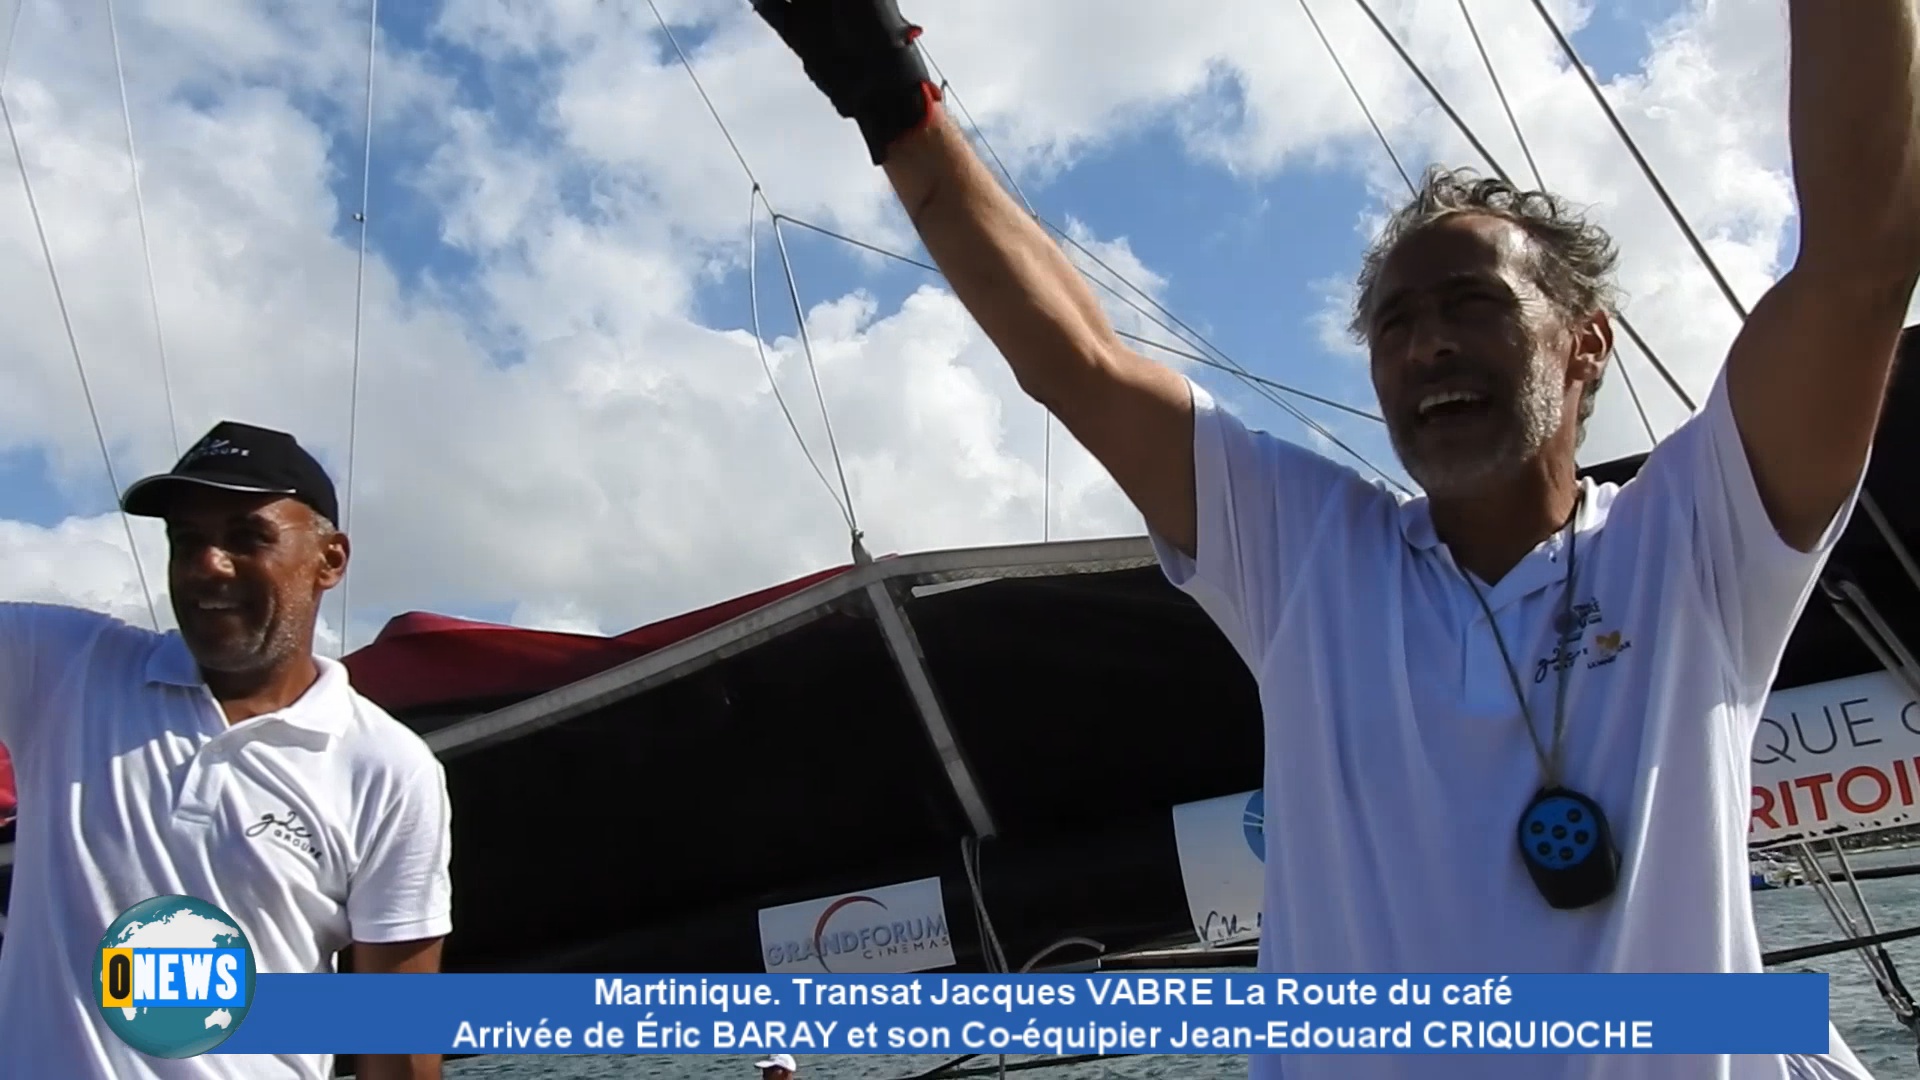 [Vidéo] Martinique. Arrivée à Fort de France de Éric BARAY et de son Co-équipier Transat Jacques VABRE